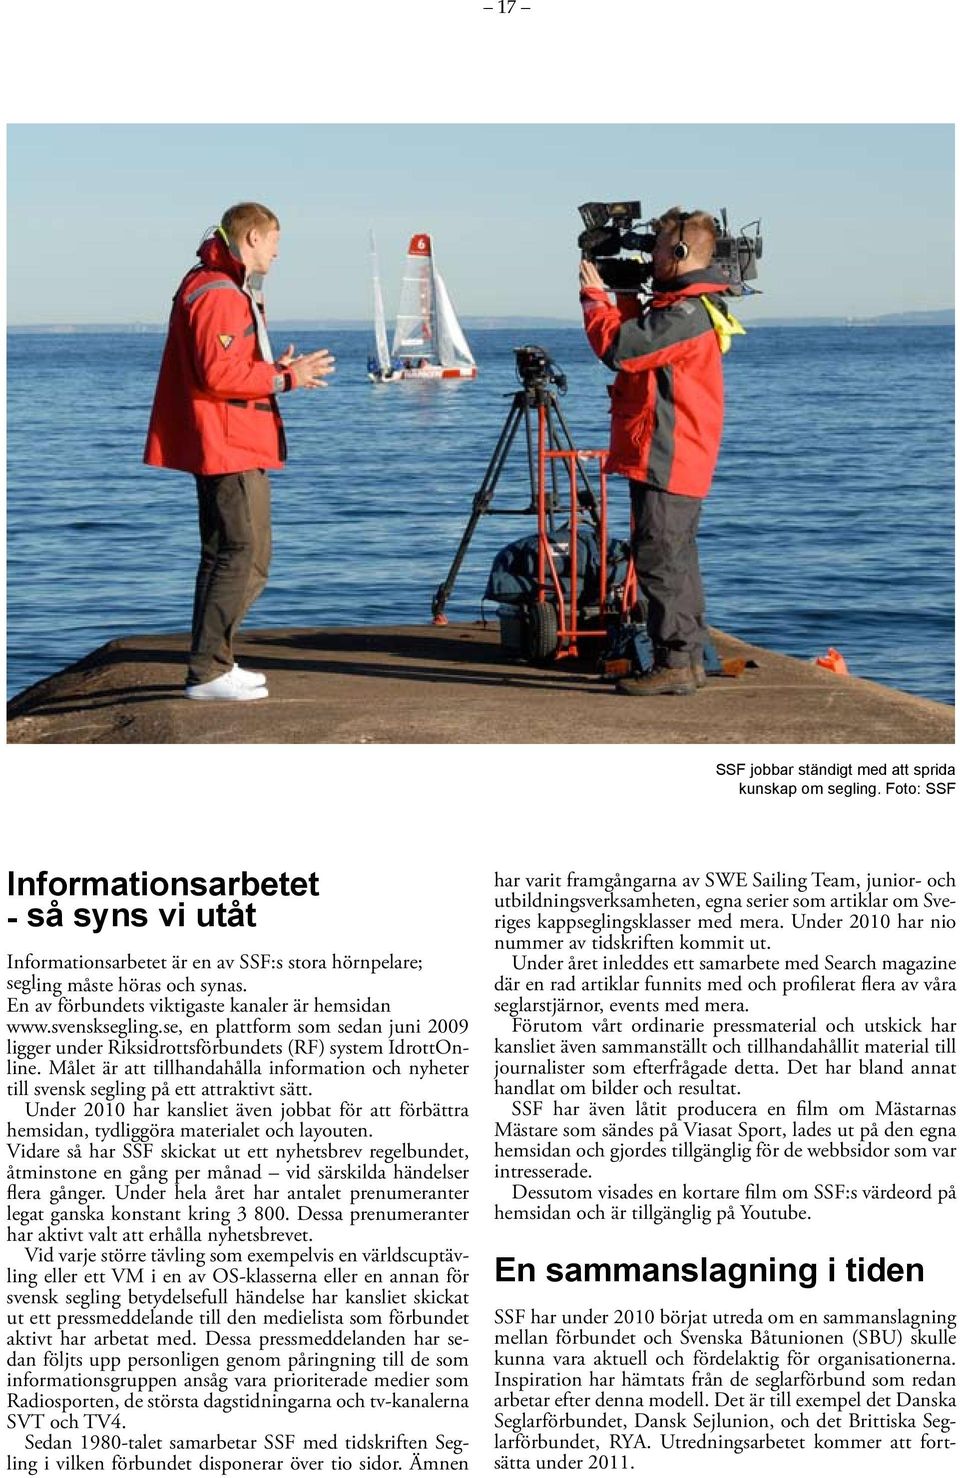 Målet är att tillhandahålla information och nyheter till svensk segling på ett attraktivt sätt. Under 2010 har kansliet även jobbat för att förbättra hemsidan, tydliggöra materialet och layouten.